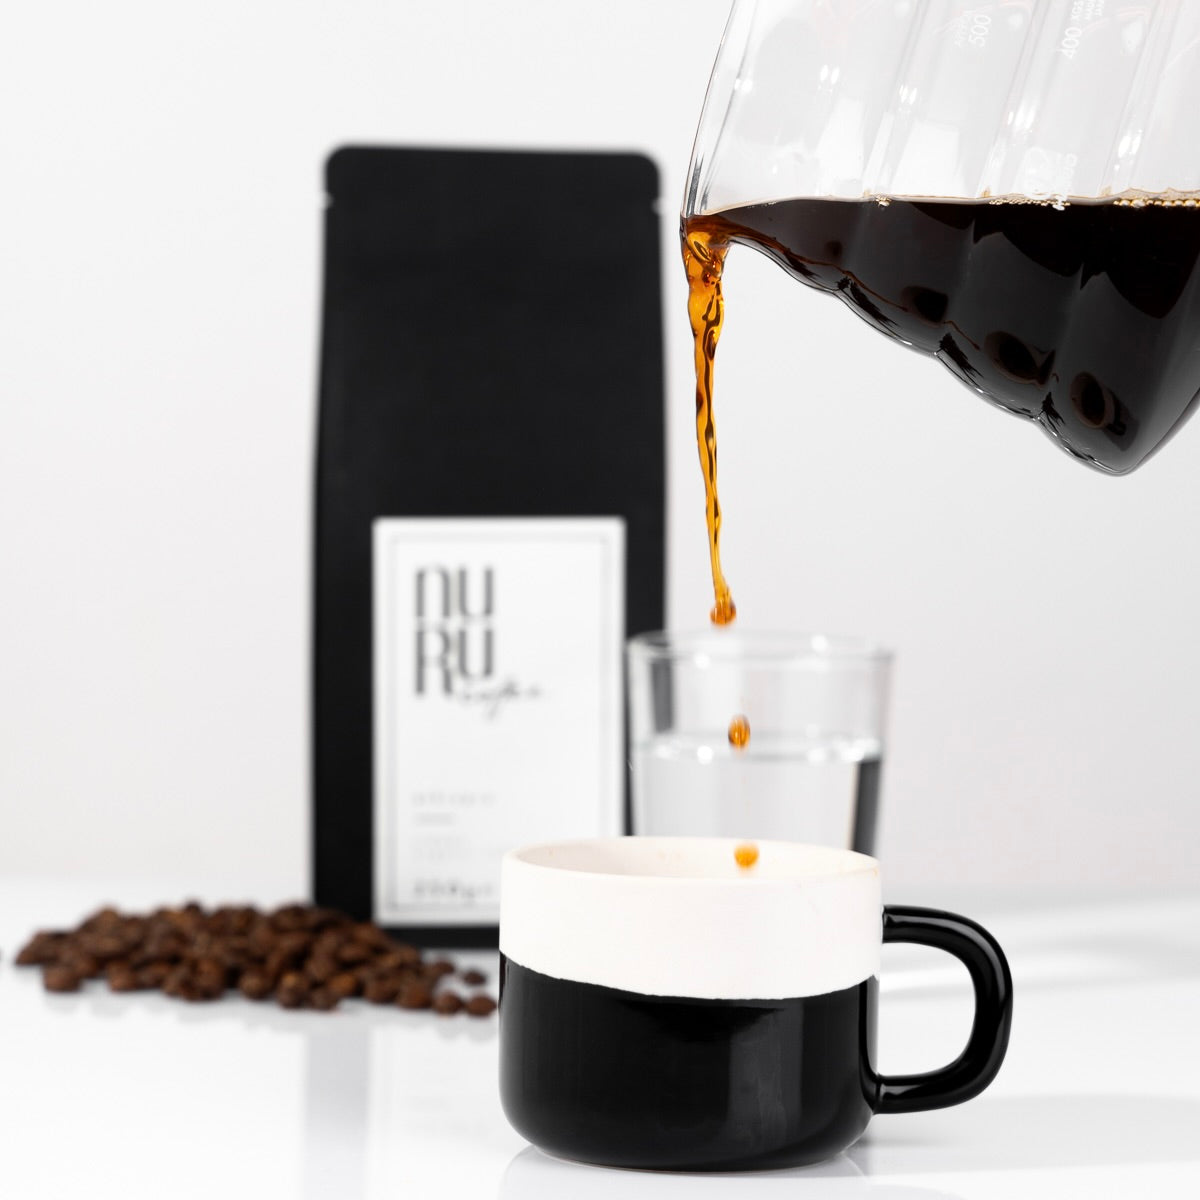 nurucoffee - nachhaltiger Kaffee im Kaffeeabo erhältlich. 